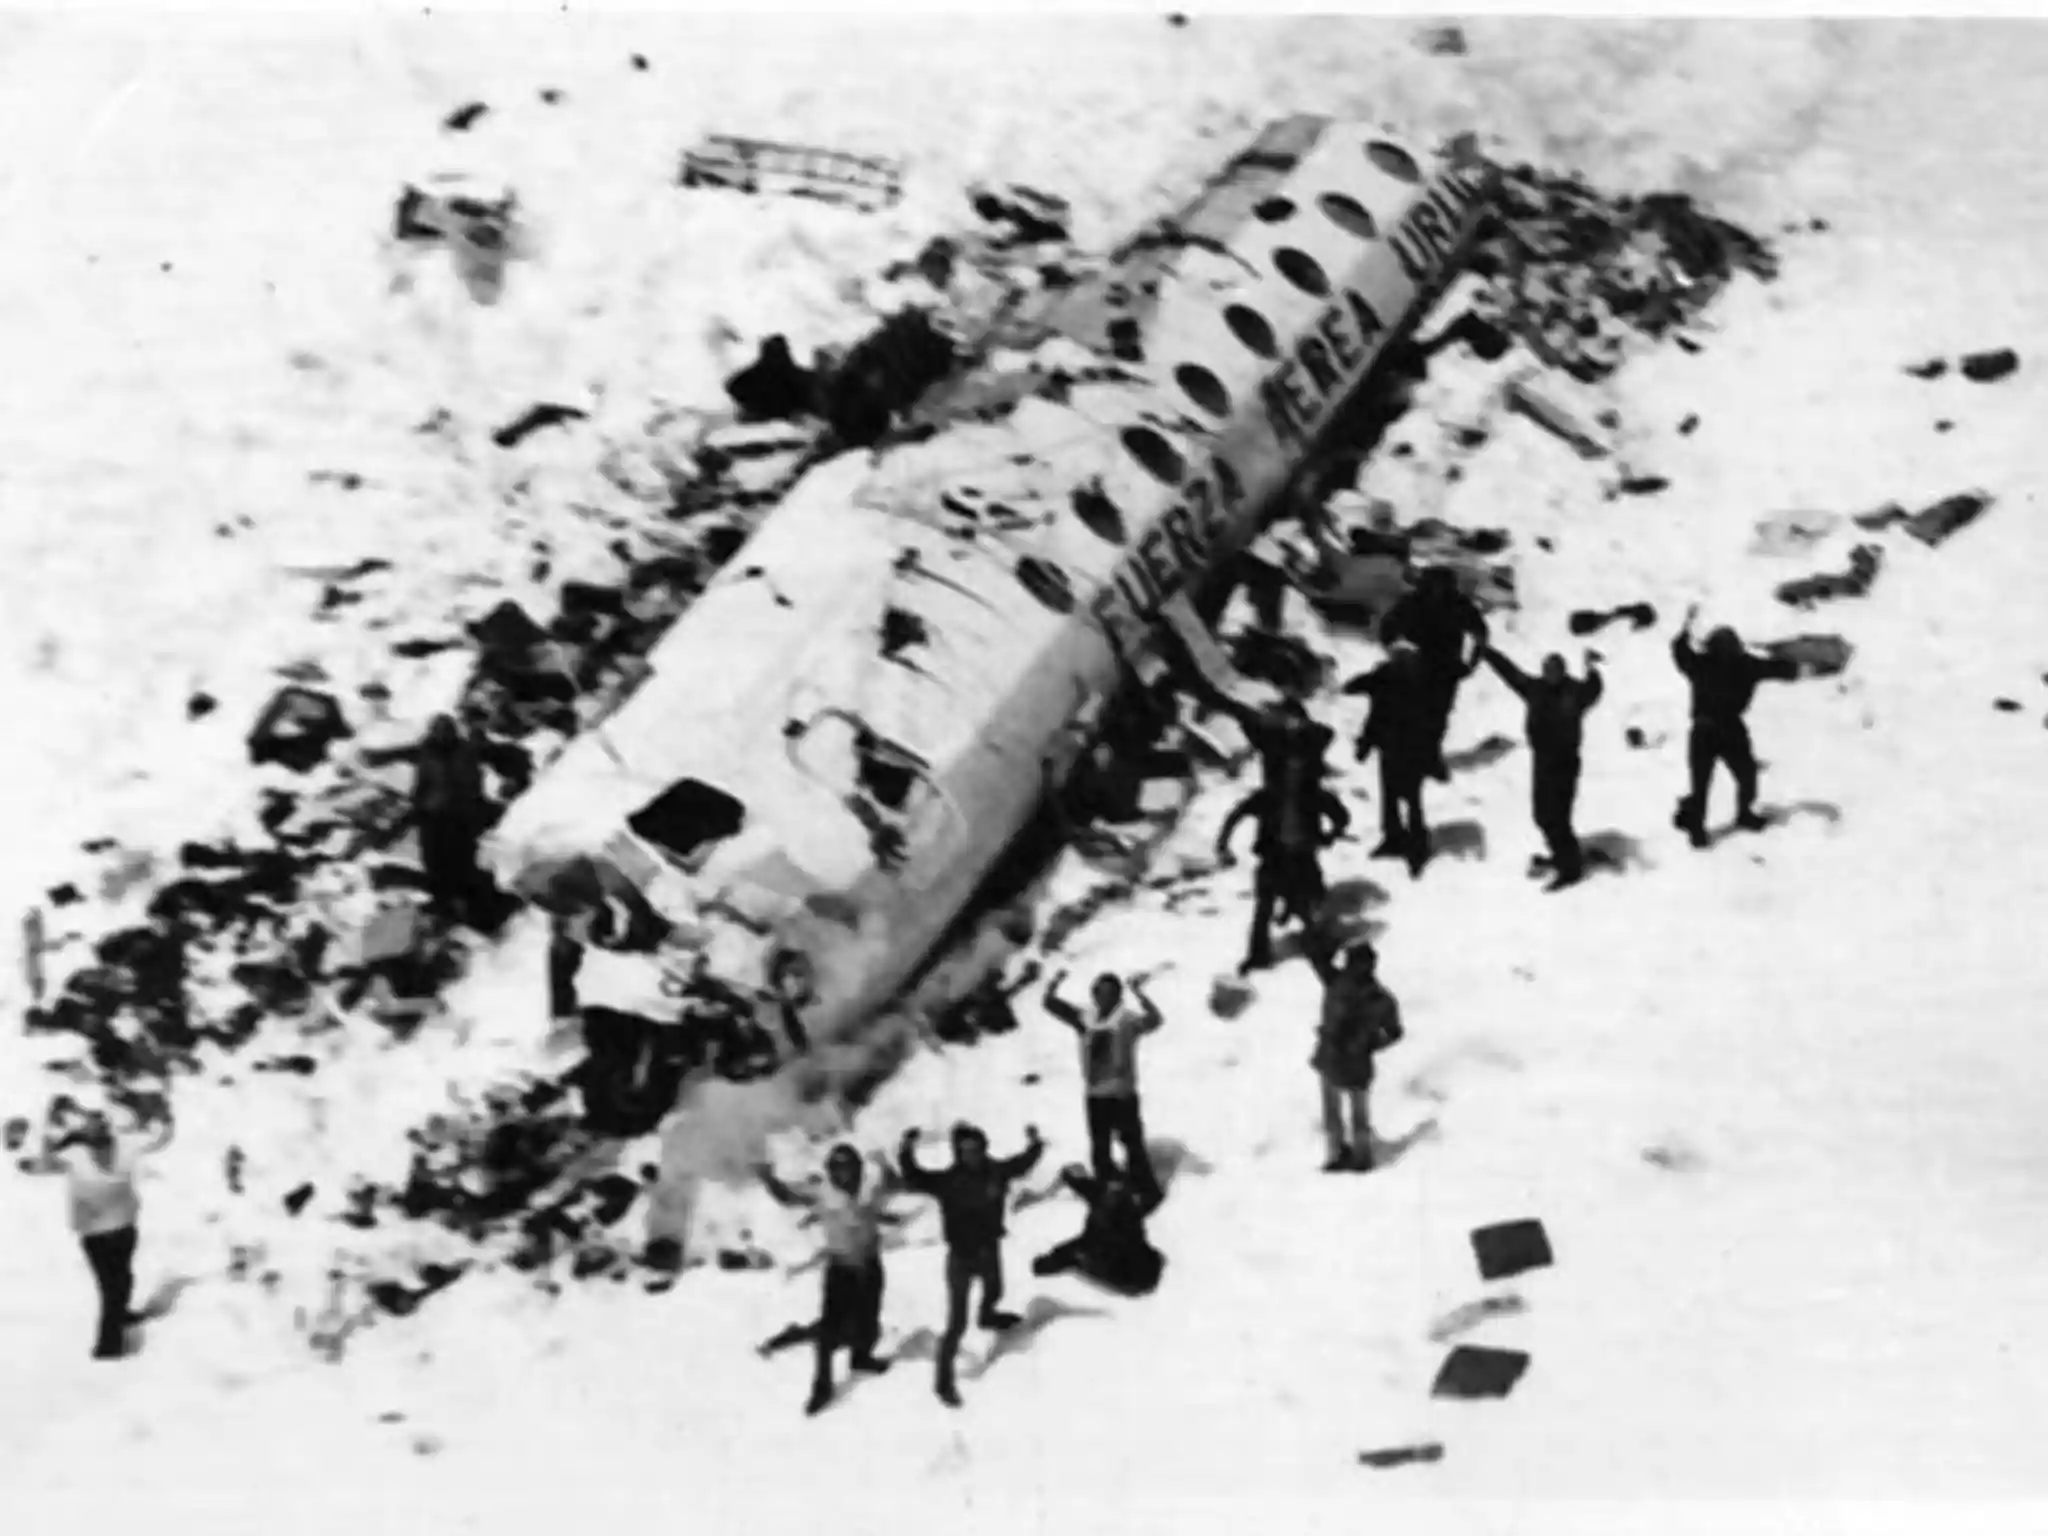 داستان عجیب و واقعی سقوط پرواز تیم راگبی اروگوئه سال ۱۹۷۲